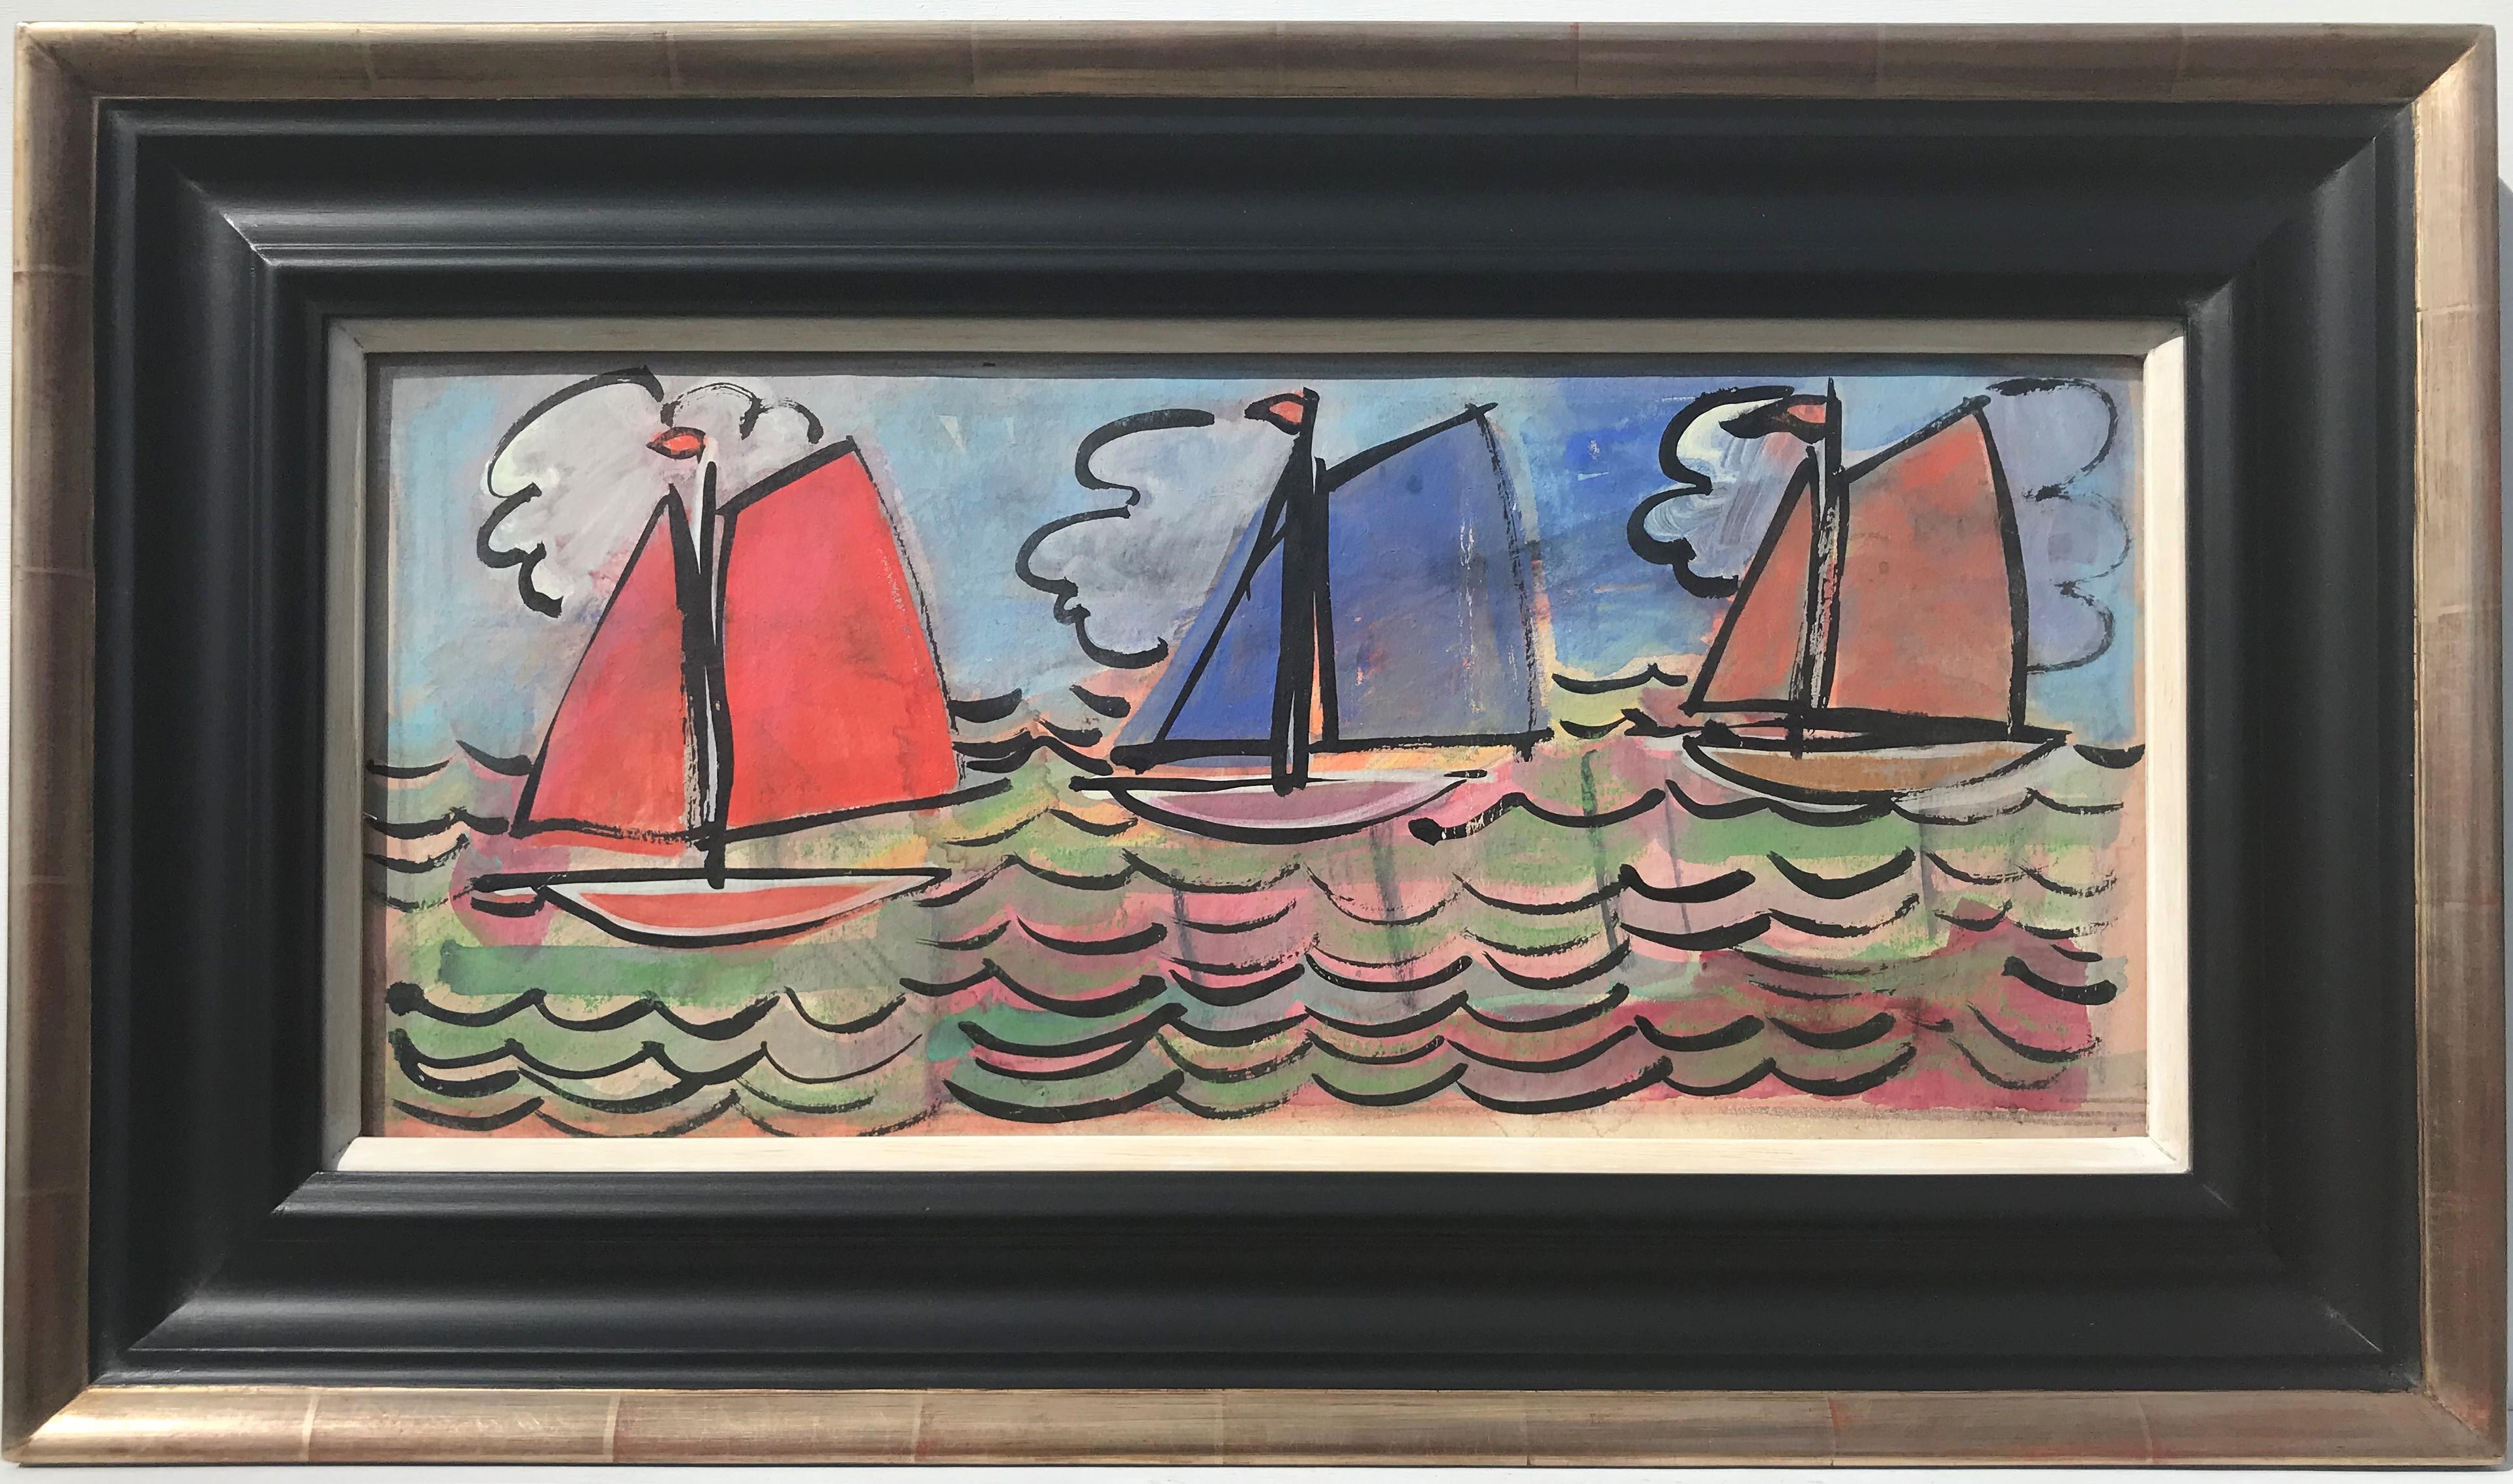 Segelboote auf See, Französische Schule des 20. Jahrhunderts, farbenfrohes Original in Öl auf Leinwand – Painting von Unknown